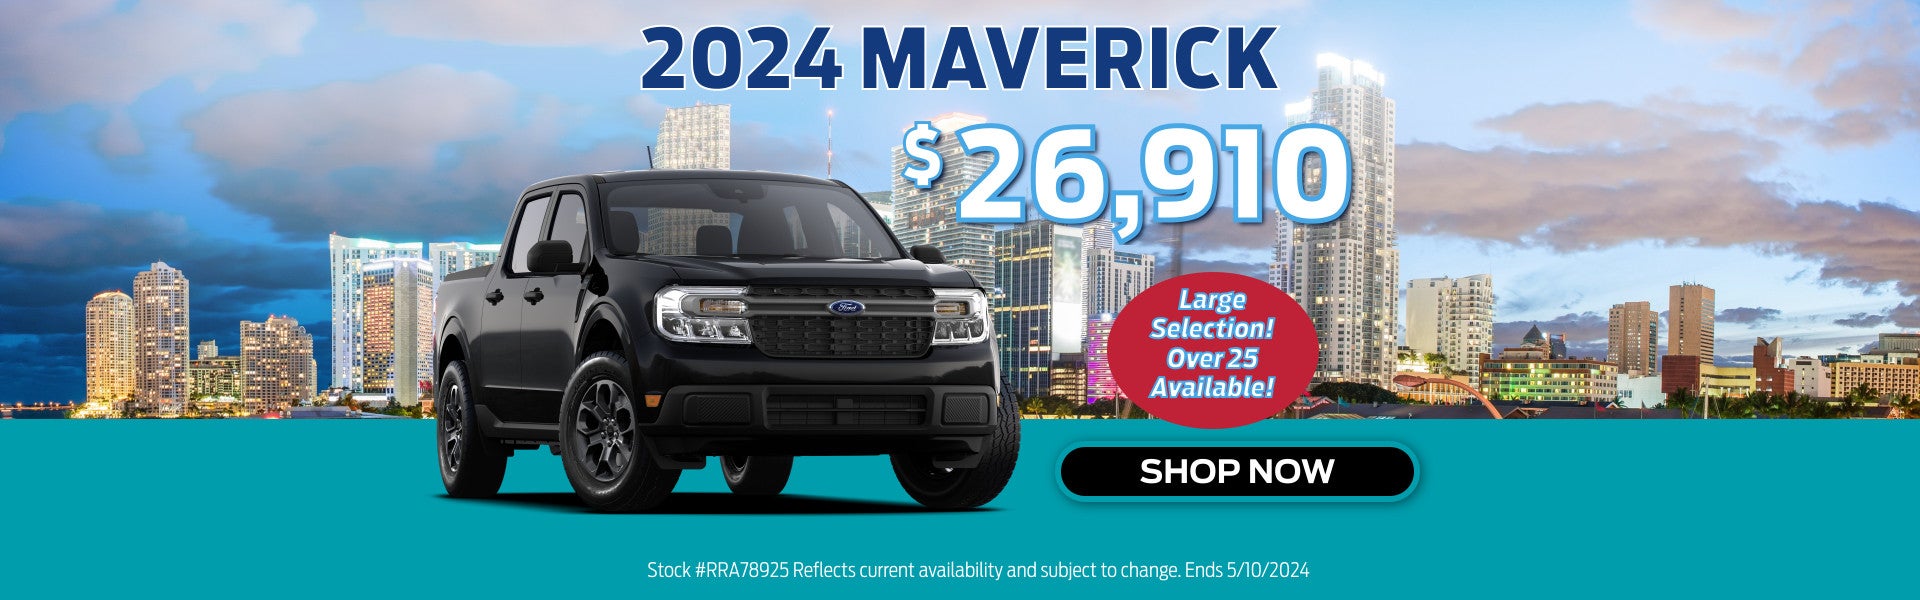 2024 Maverick, $26,910